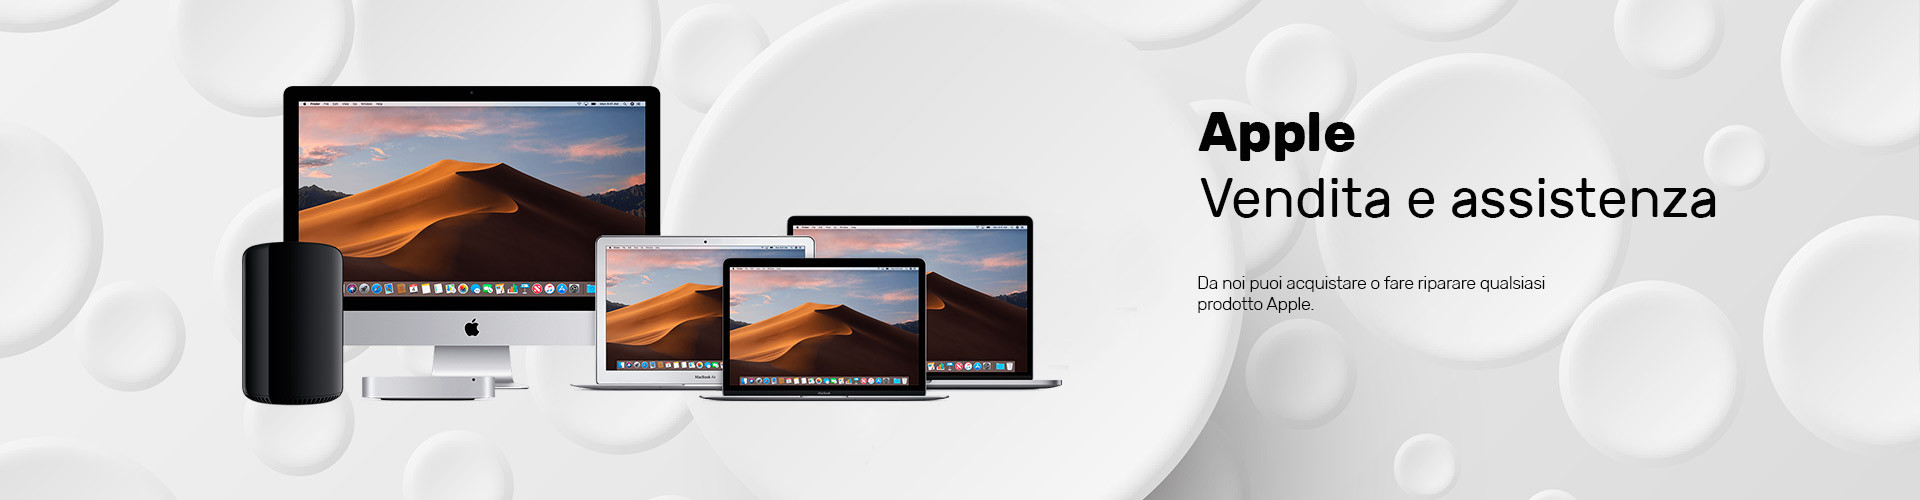 Apple computer e assistenza